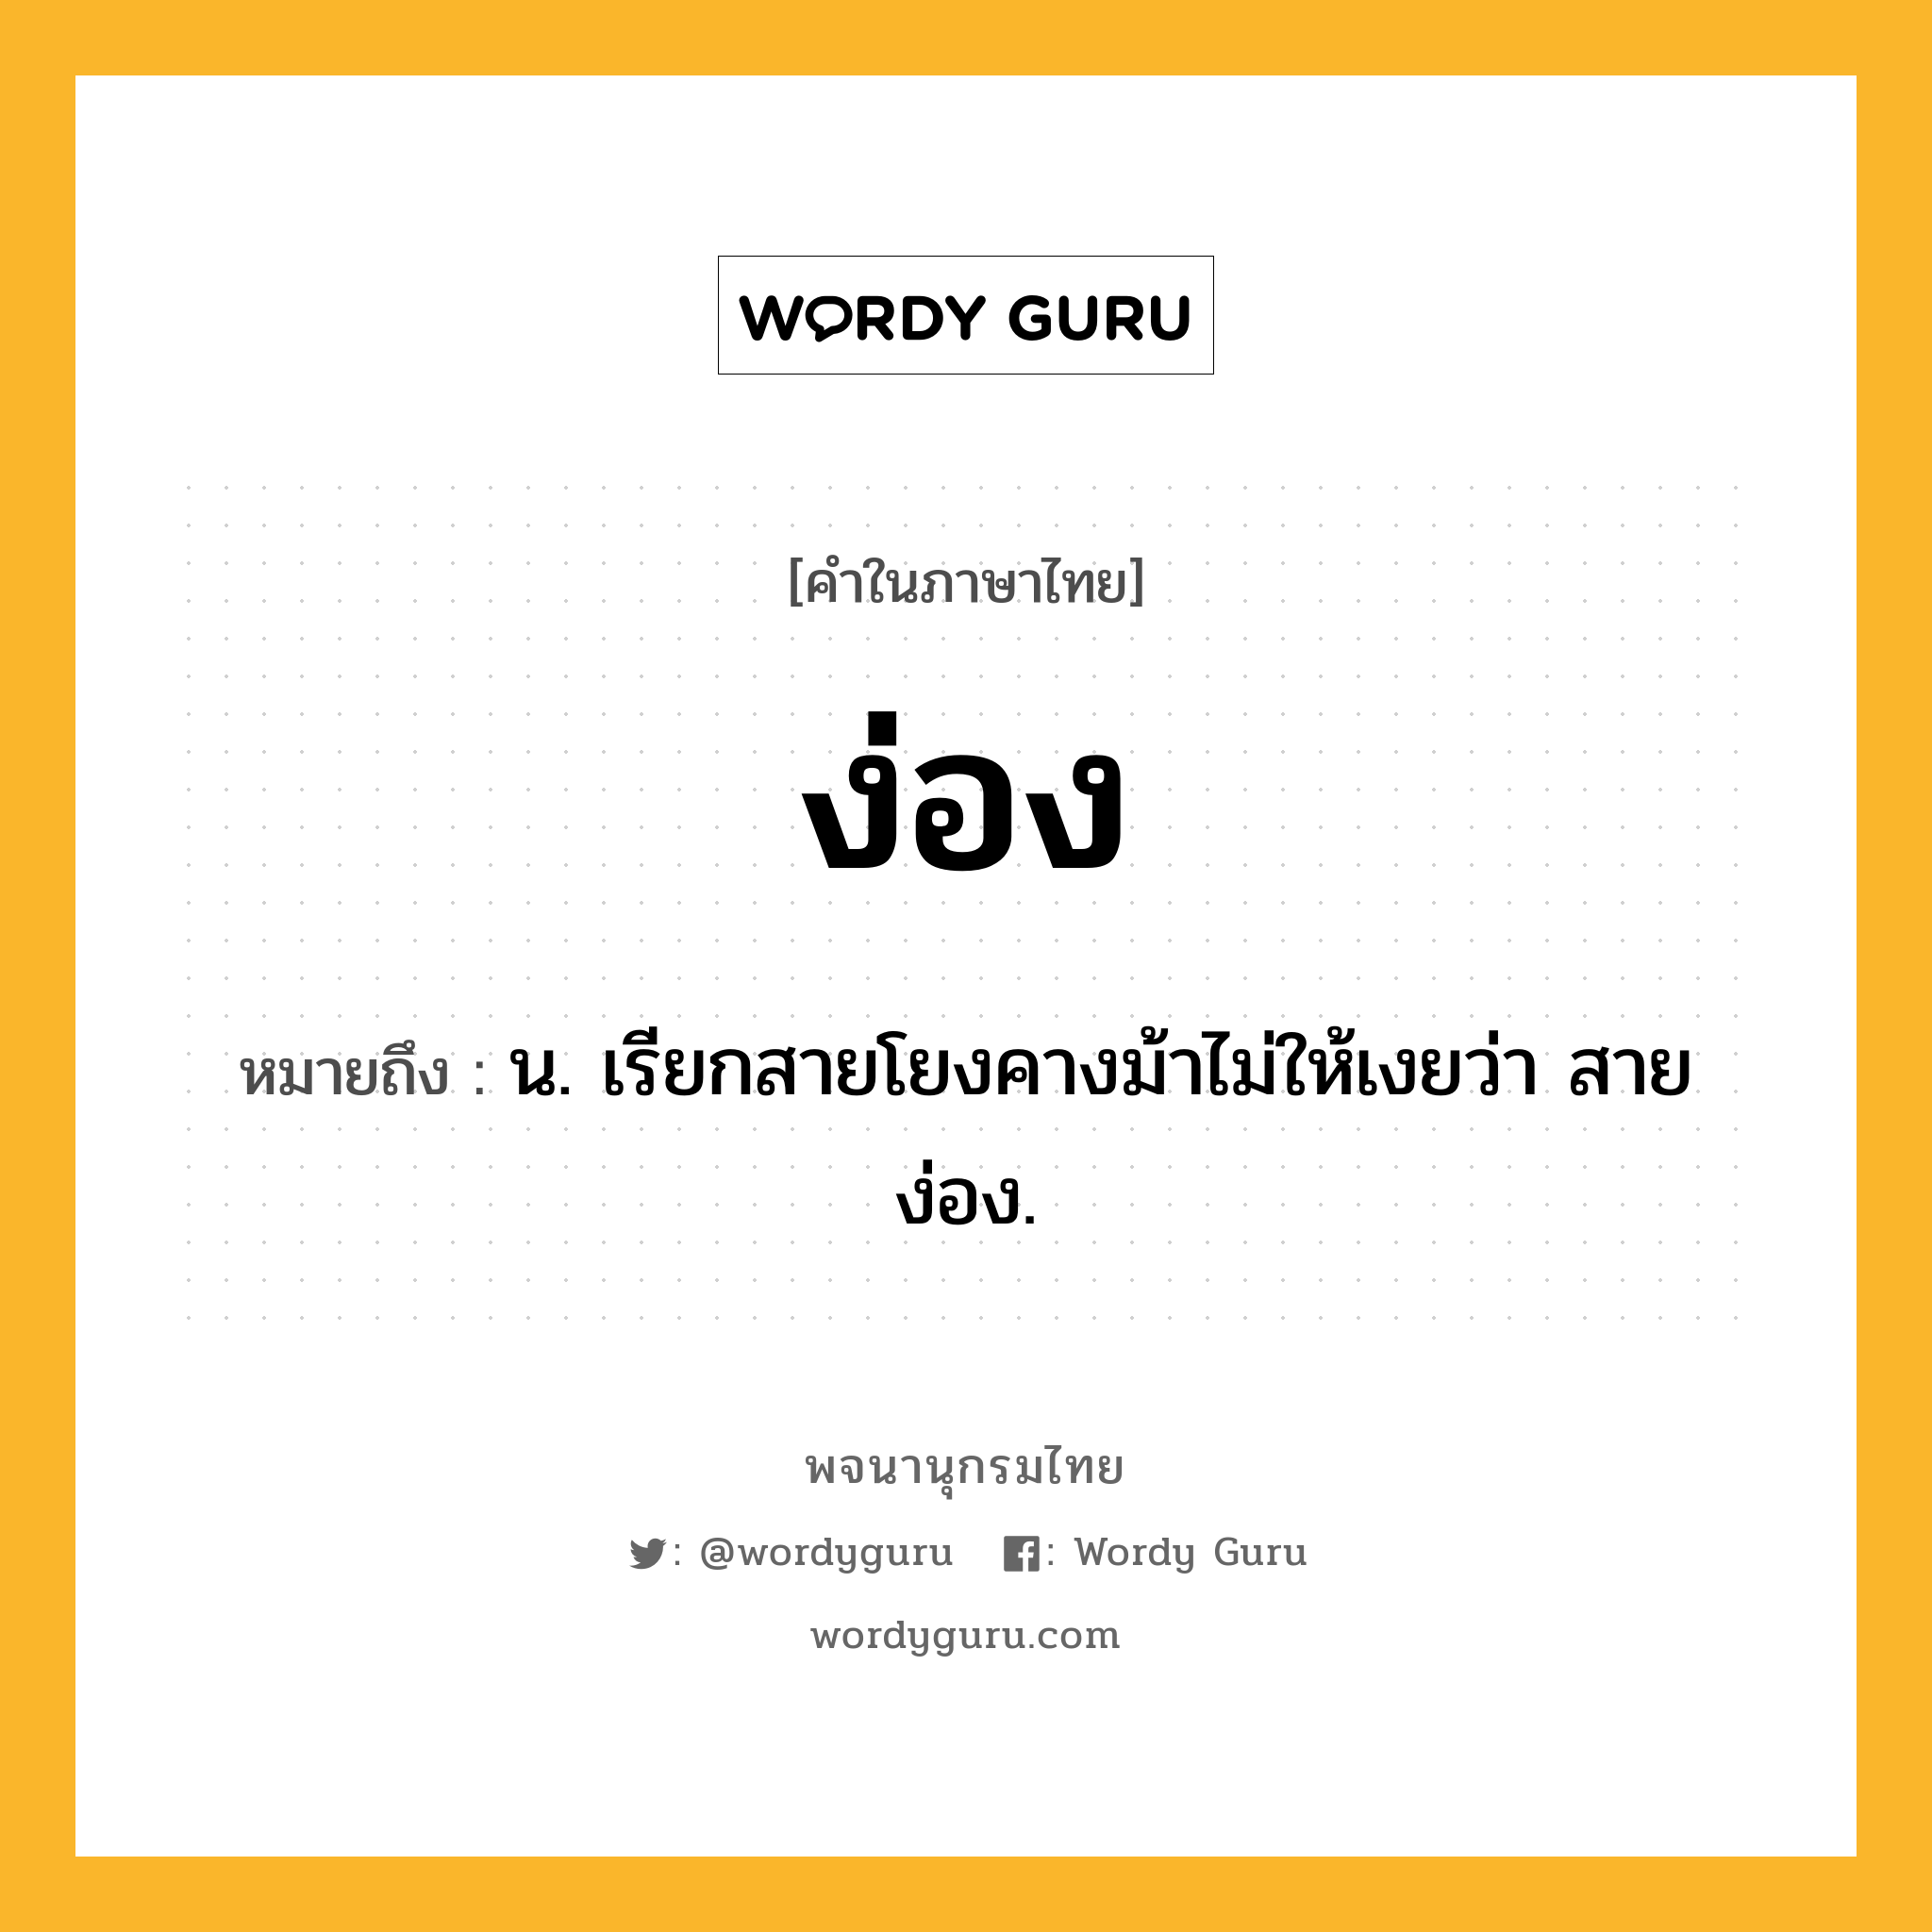 ง่อง ความหมาย หมายถึงอะไร?, คำในภาษาไทย ง่อง หมายถึง น. เรียกสายโยงคางม้าไม่ให้เงยว่า สายง่อง.